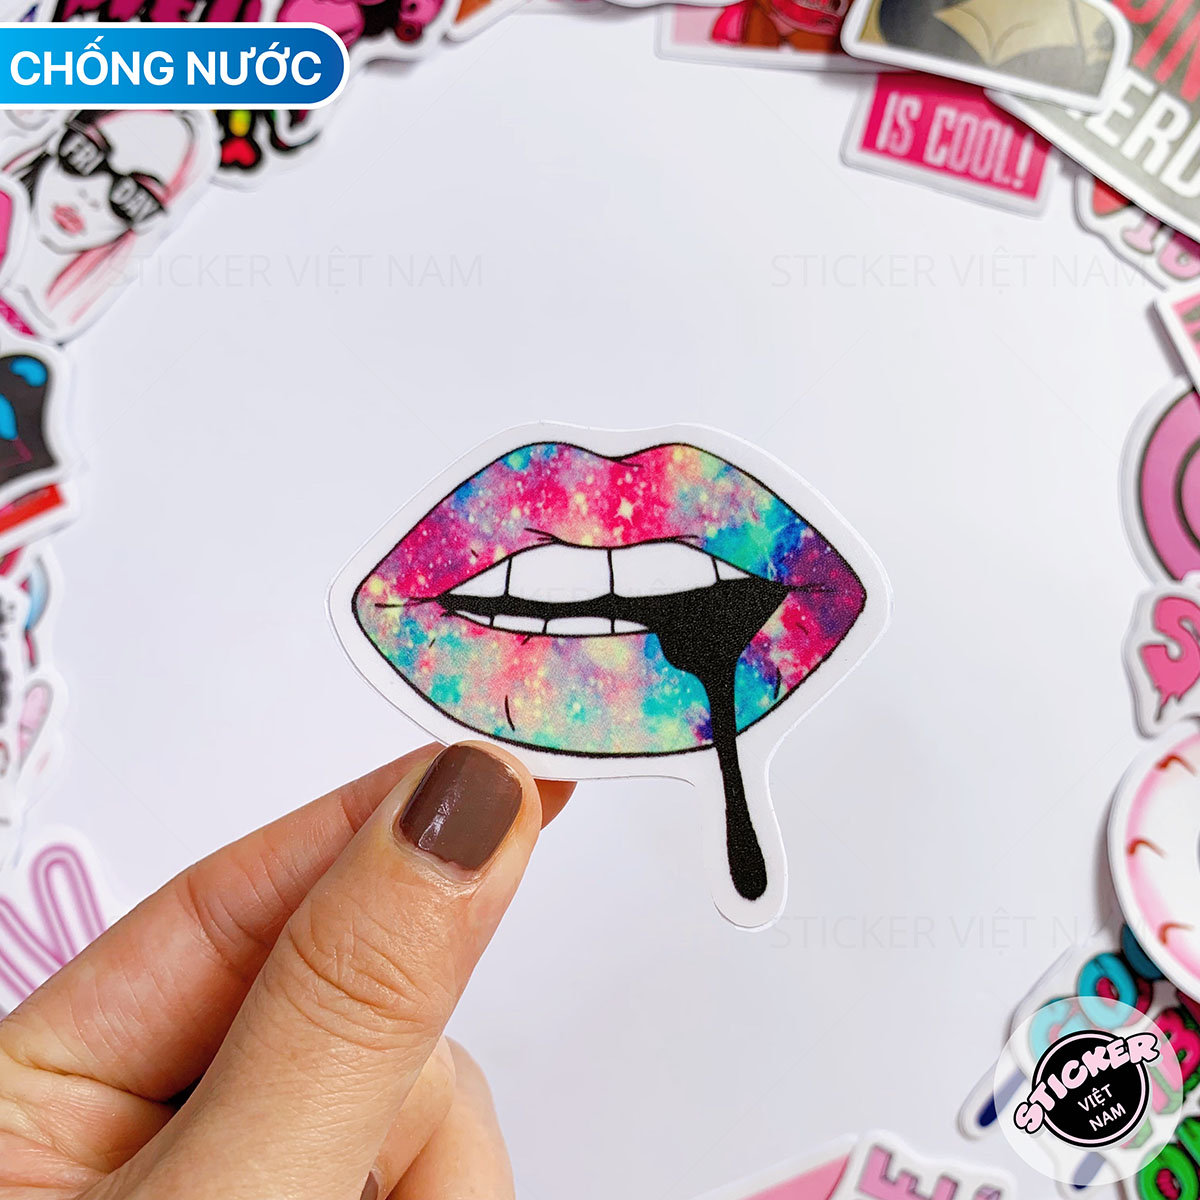 Sticker Màu Hồng Siêu Ngầu Swag Pink - Chất Liệu PVC Chất Lượng Cao Chống Nước - Kích Thước 4-8cm